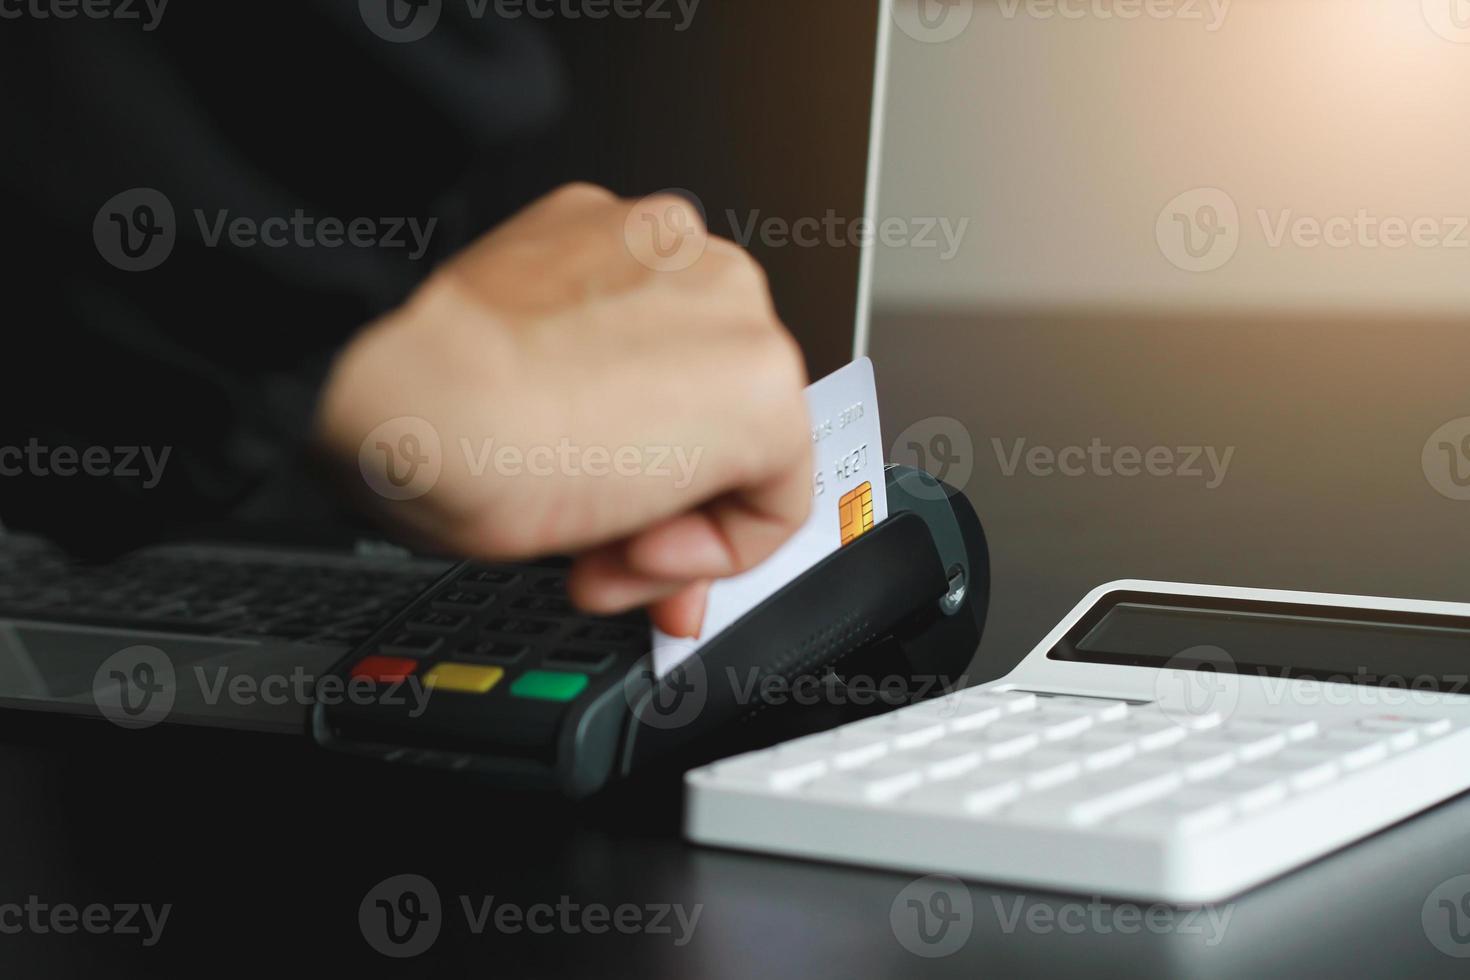 une femme utilisant une machine à carte de crédit manuelle pour vendre des produits dans la boutique. concept de dépenses par carte de crédit. photo